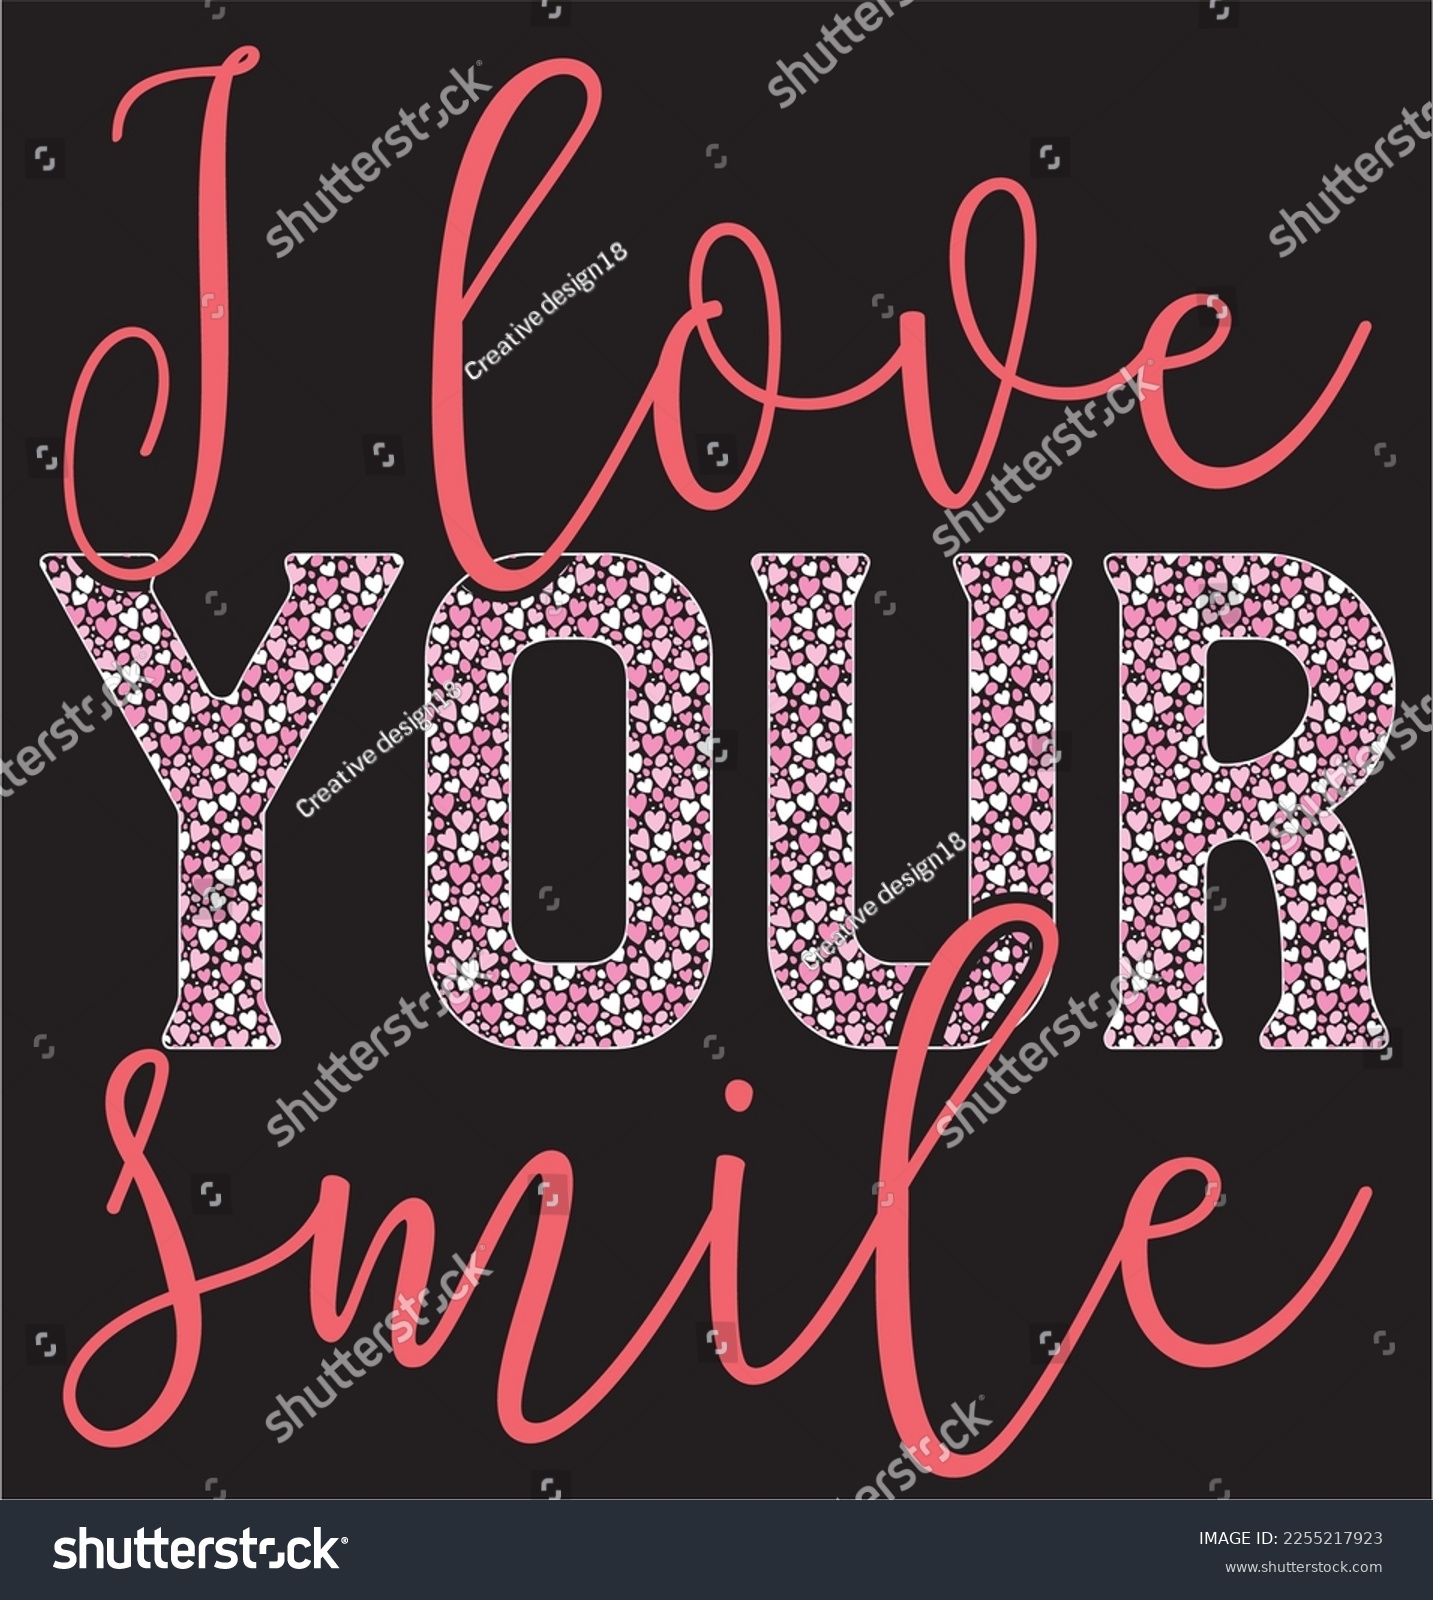 SVG of 
I love your smile SVG design svg